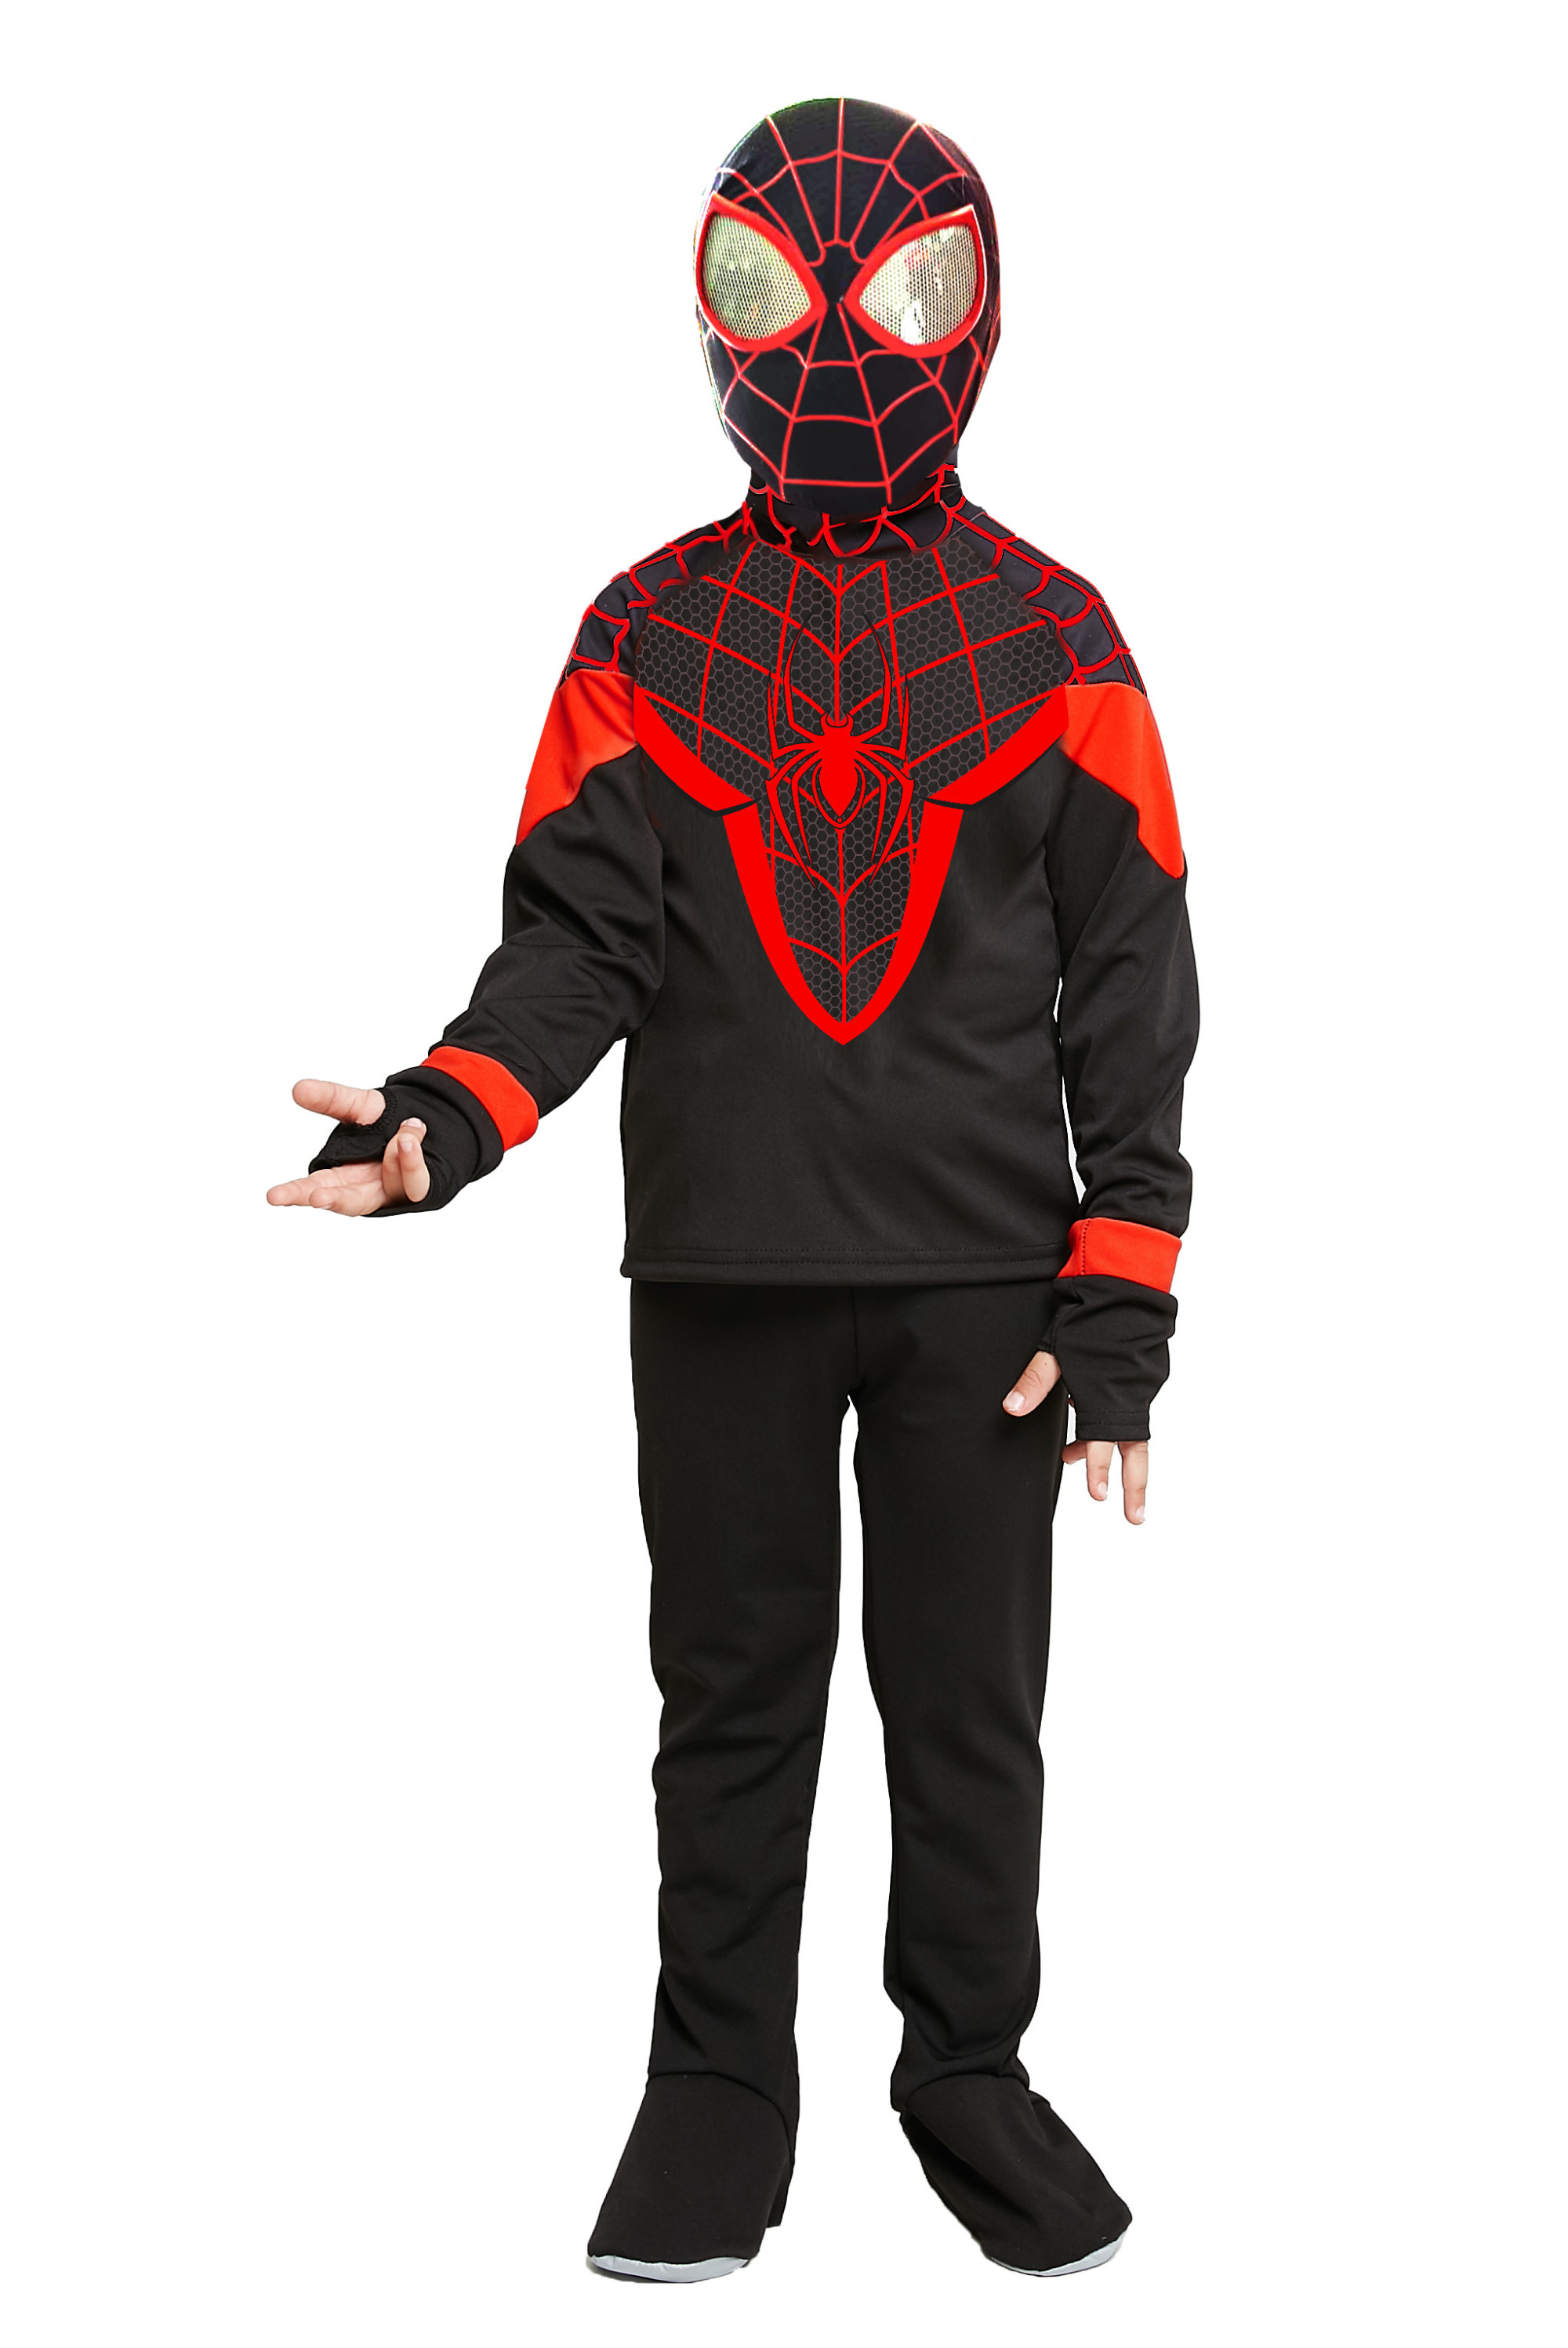 фото Карнавальный костюм человек-паук, размер 104-52, арт. 9016 к-21 batik 9016 к-21